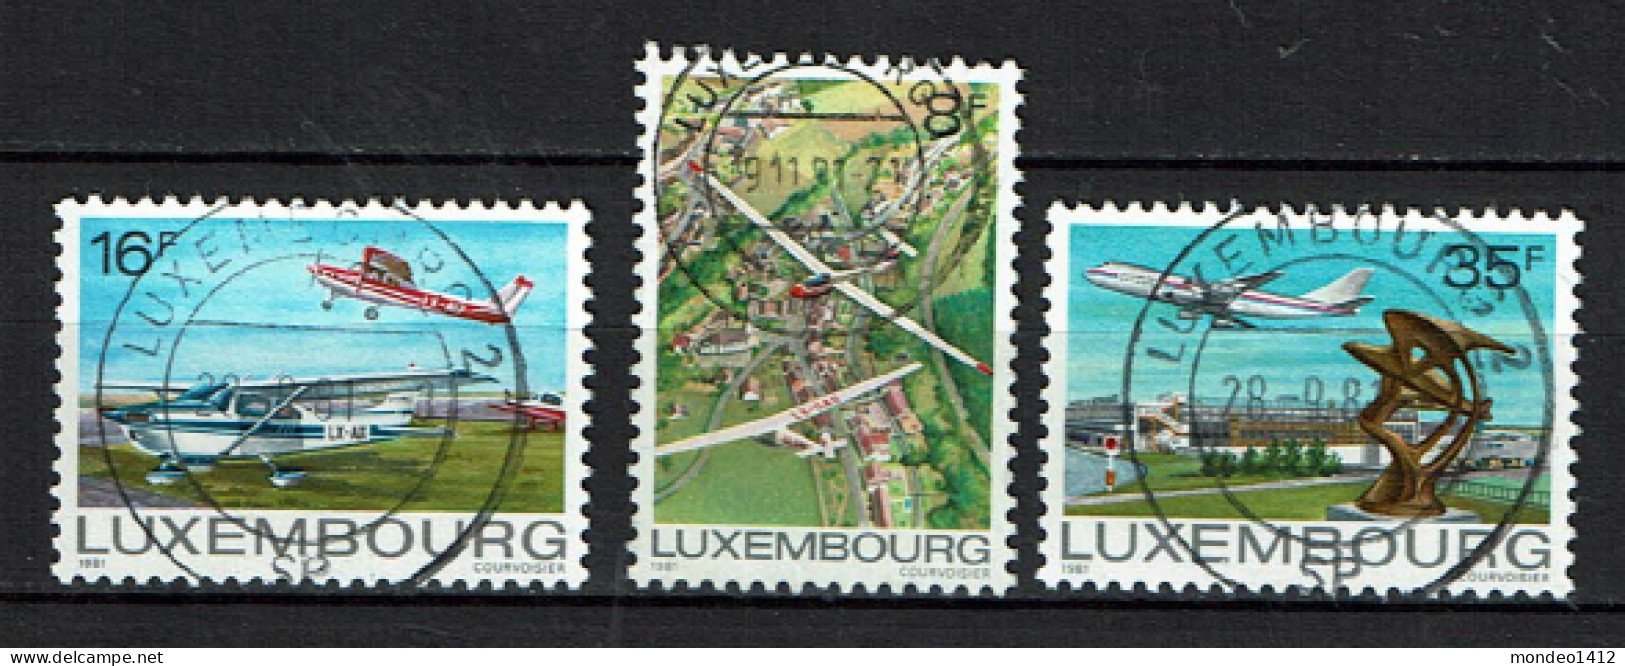 Luxembourg 1981 - YT 987/989 - Aviation, Airplanes, Luftfahrt - Gebraucht